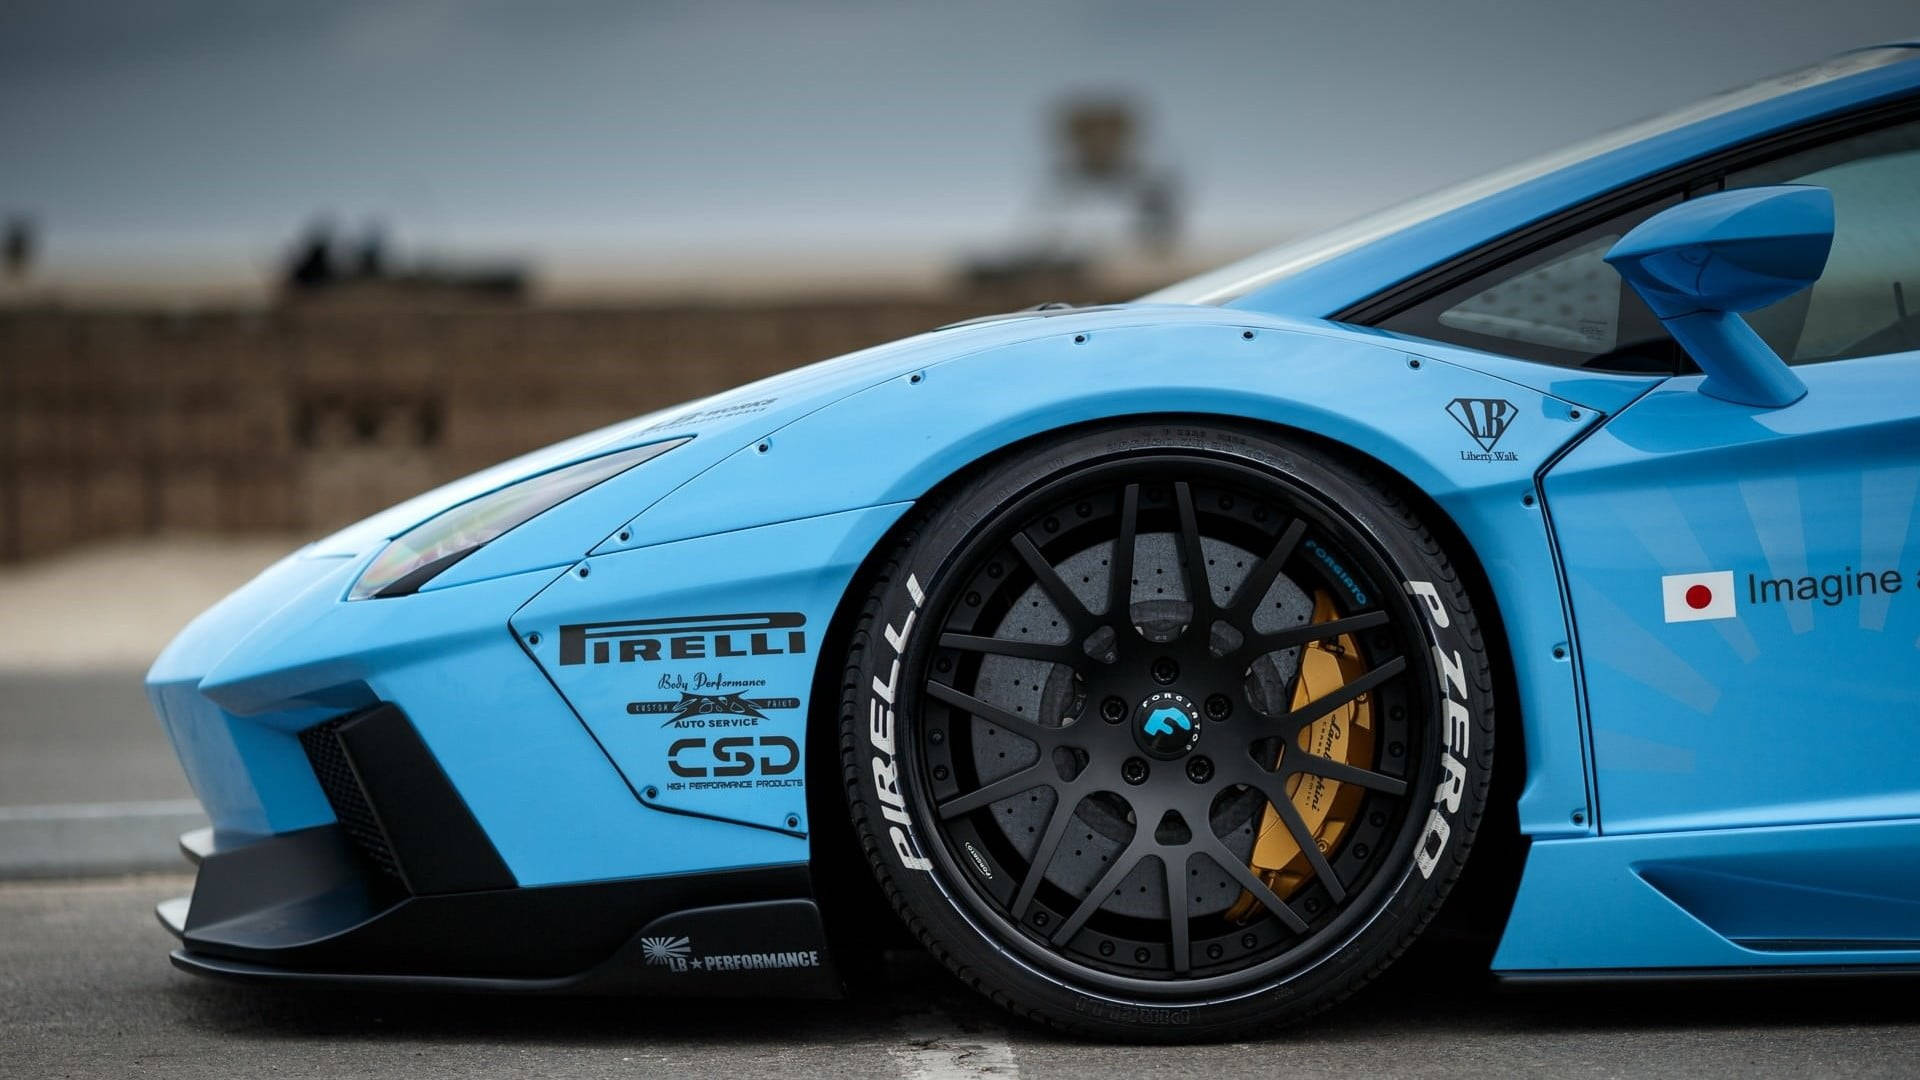 Blauersportwagen Mit Pirelli Reifen. Wallpaper